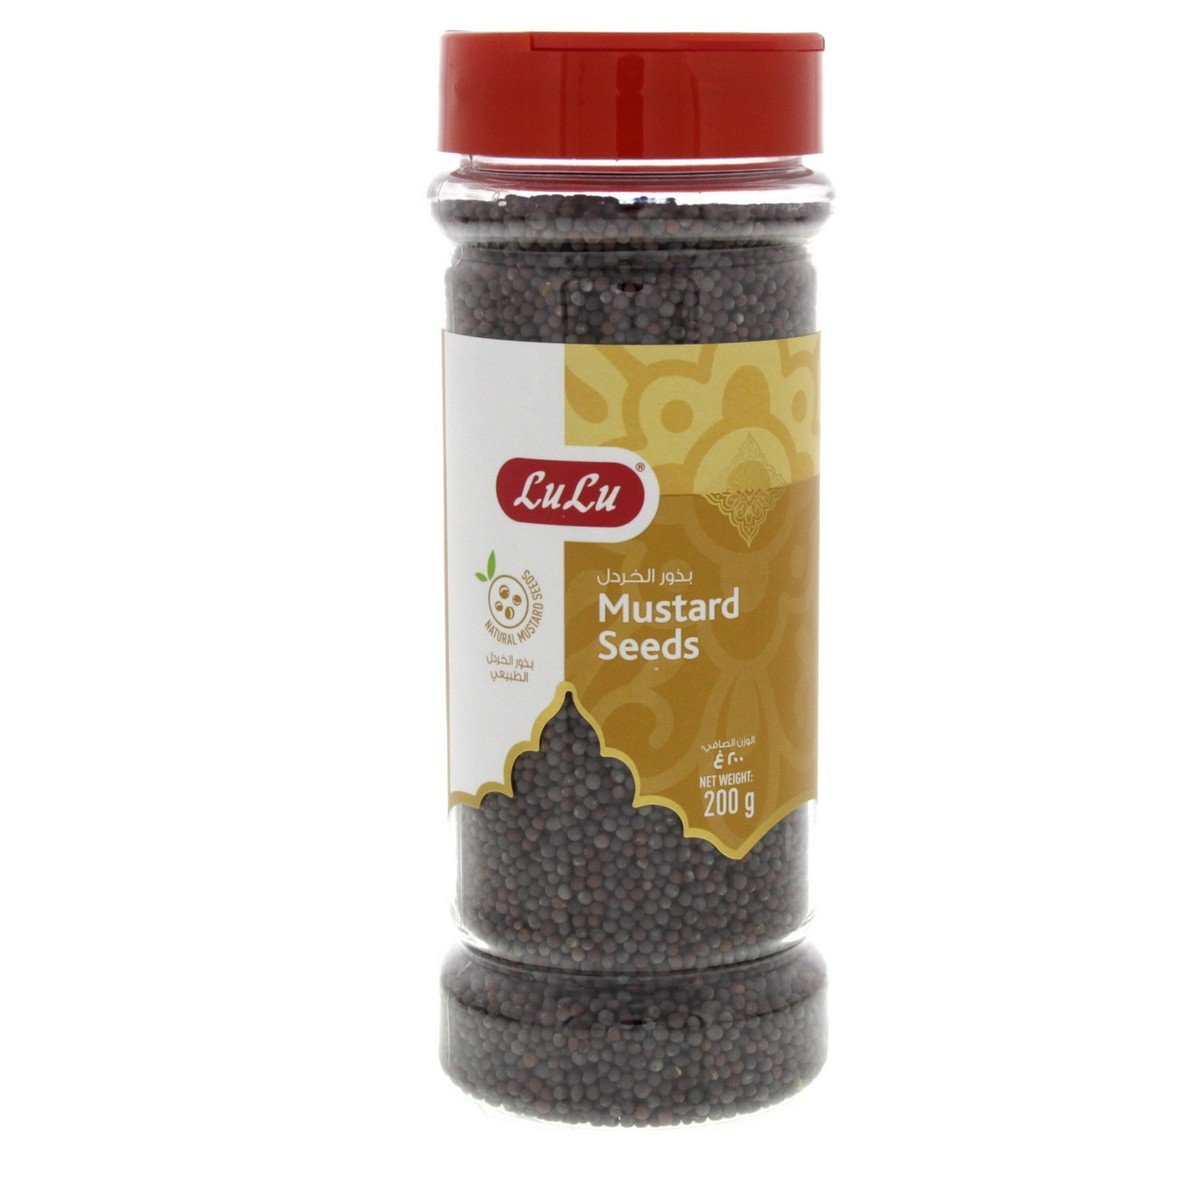 LuLu Mustard Seeds 200 g